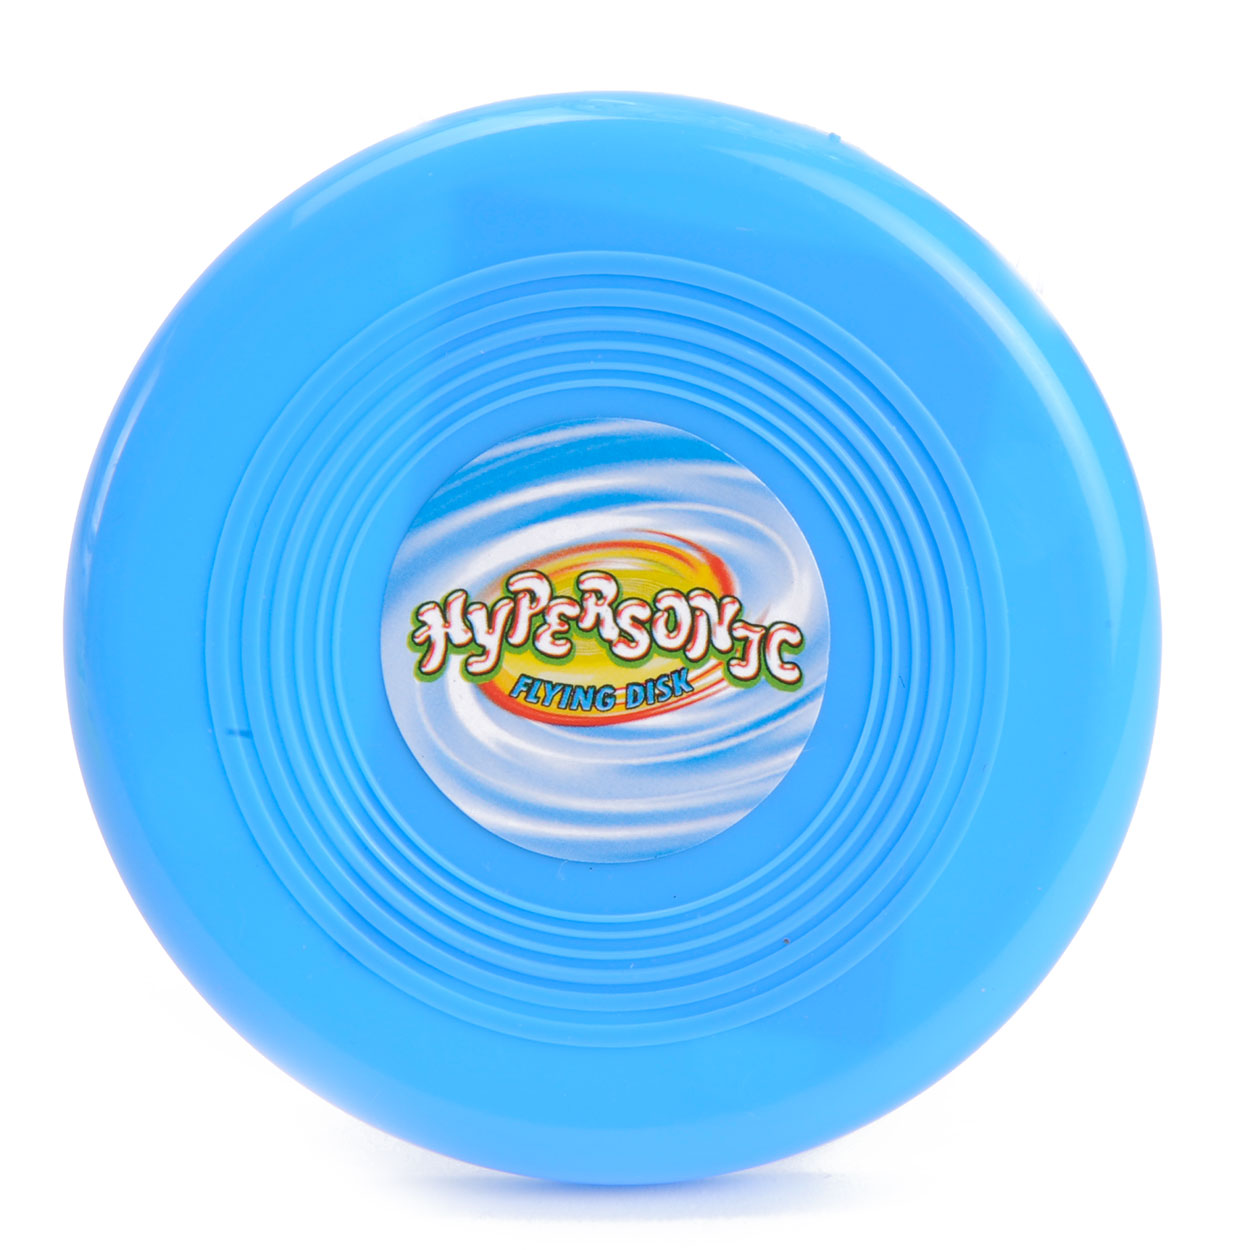 Petit frisbee coloré